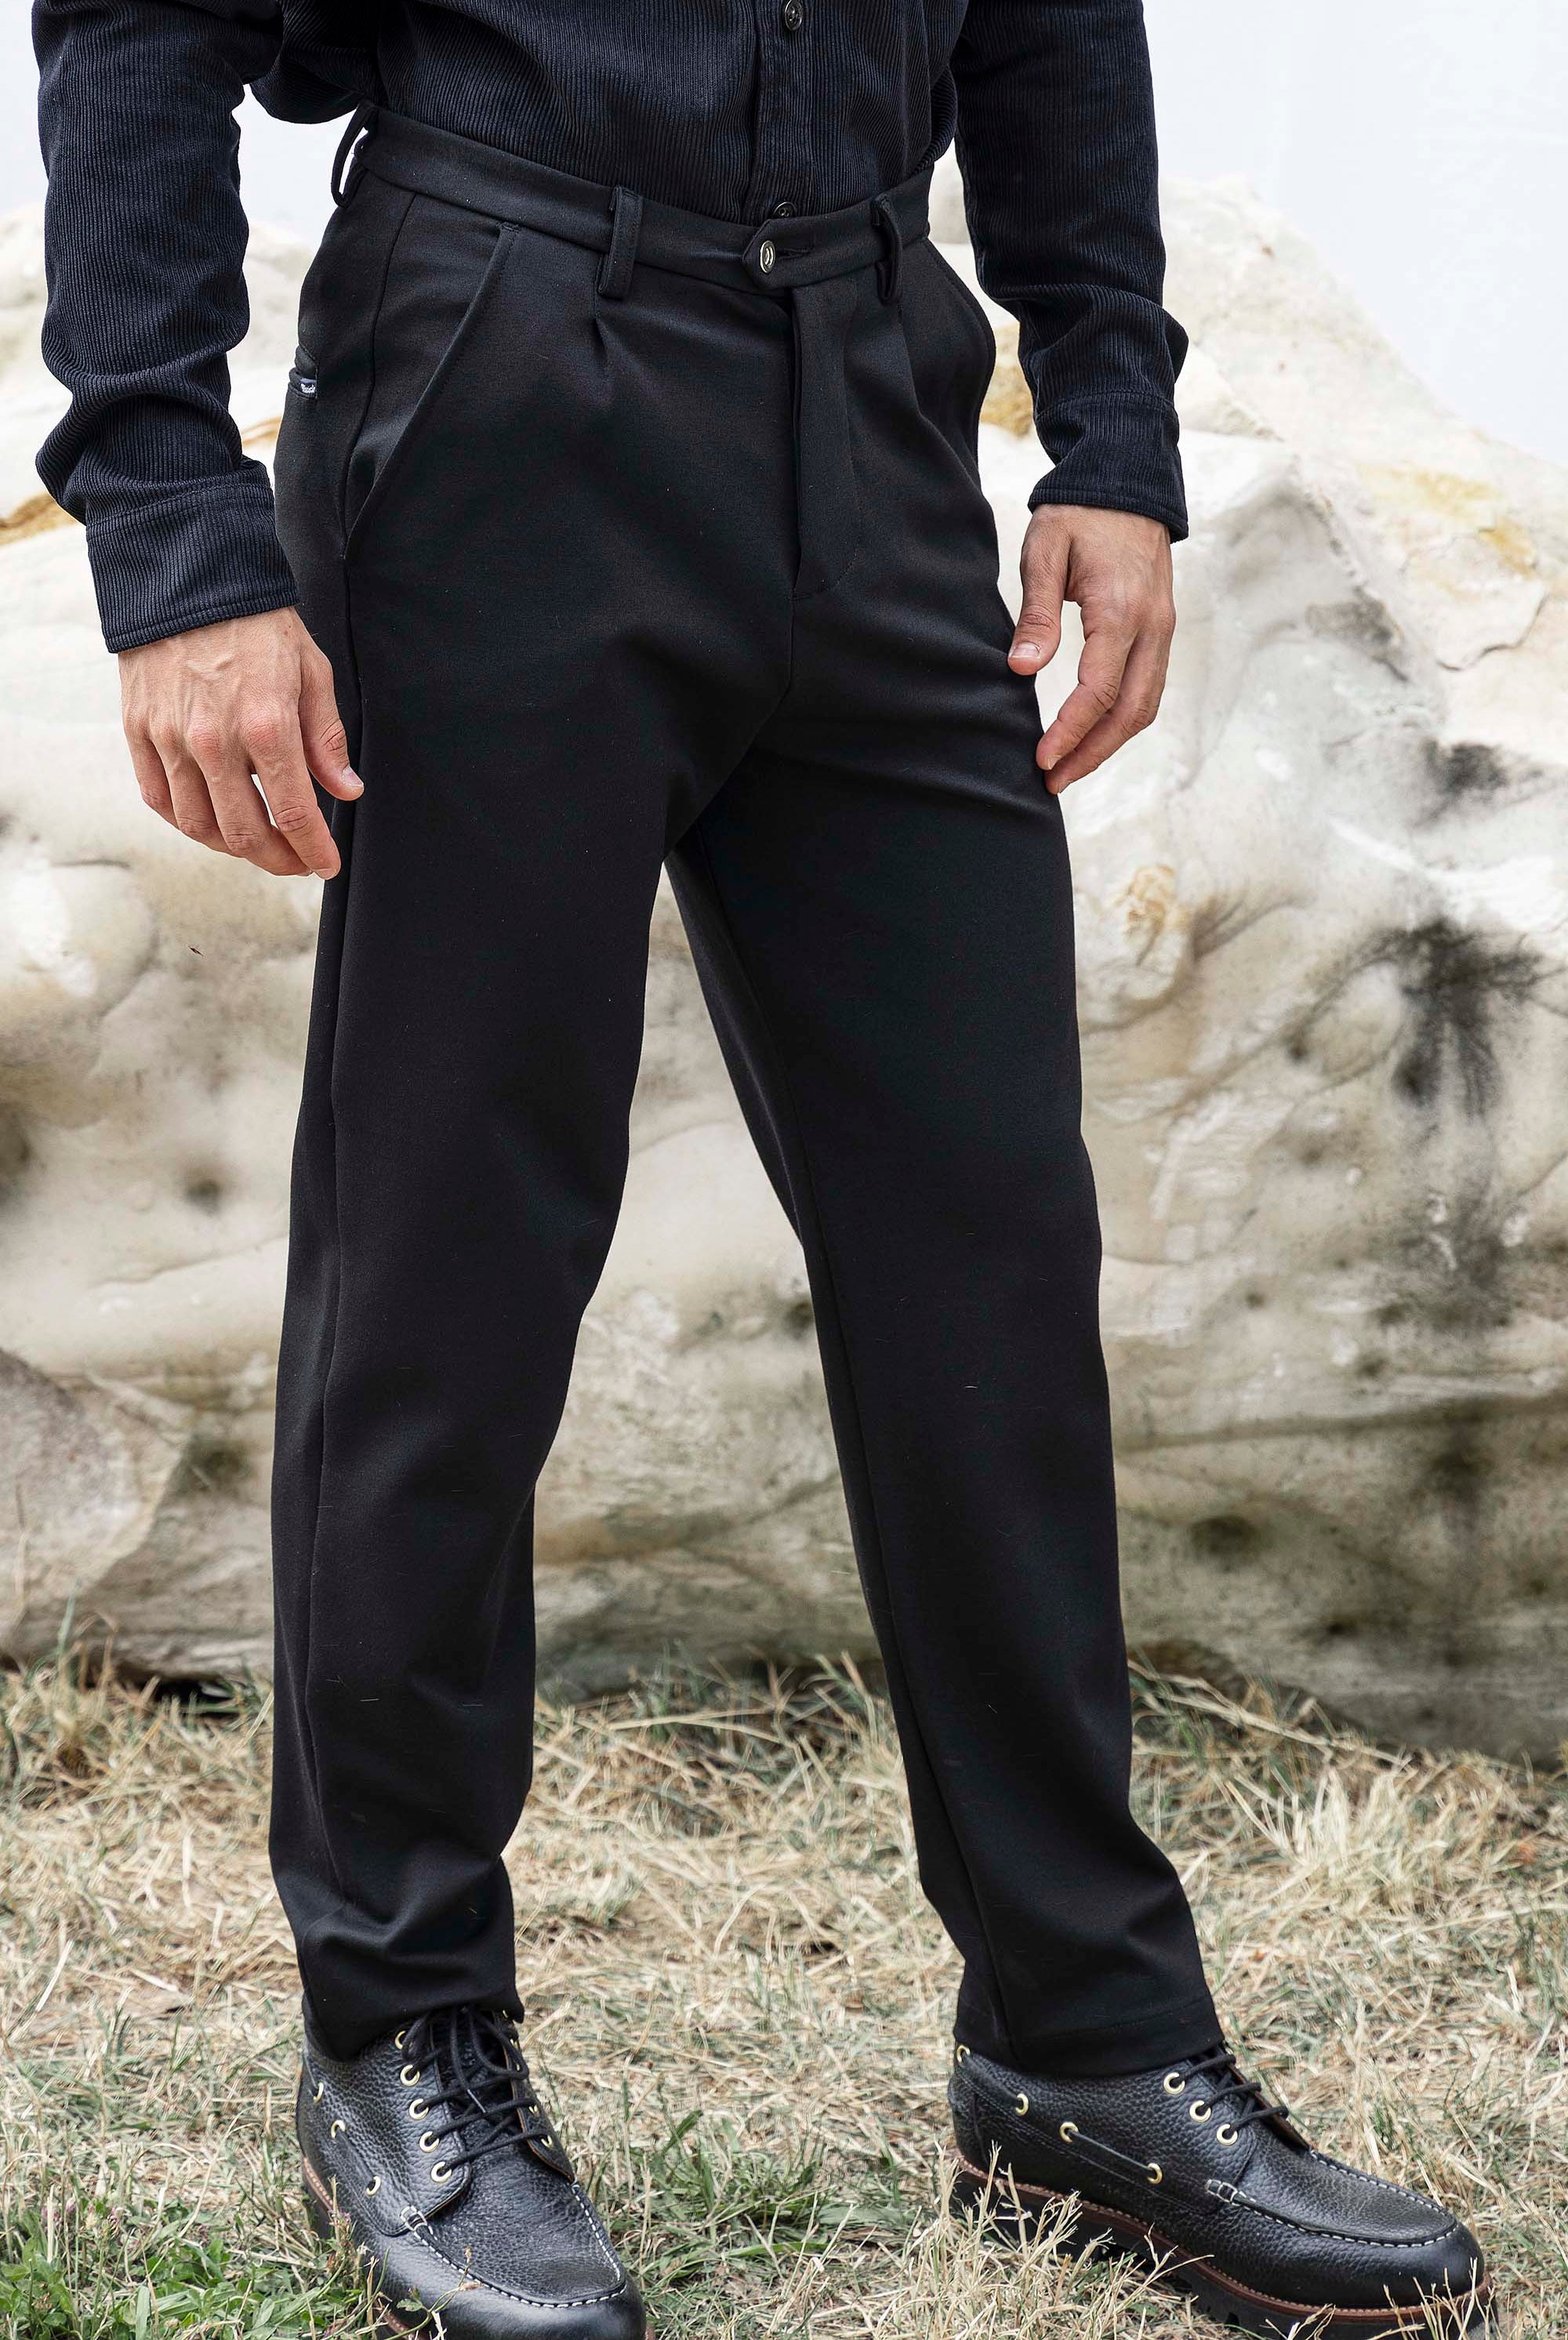 Pantalon Tino Largo Noir particulièrement confortables et stylés, parfaits à porter au quotidien